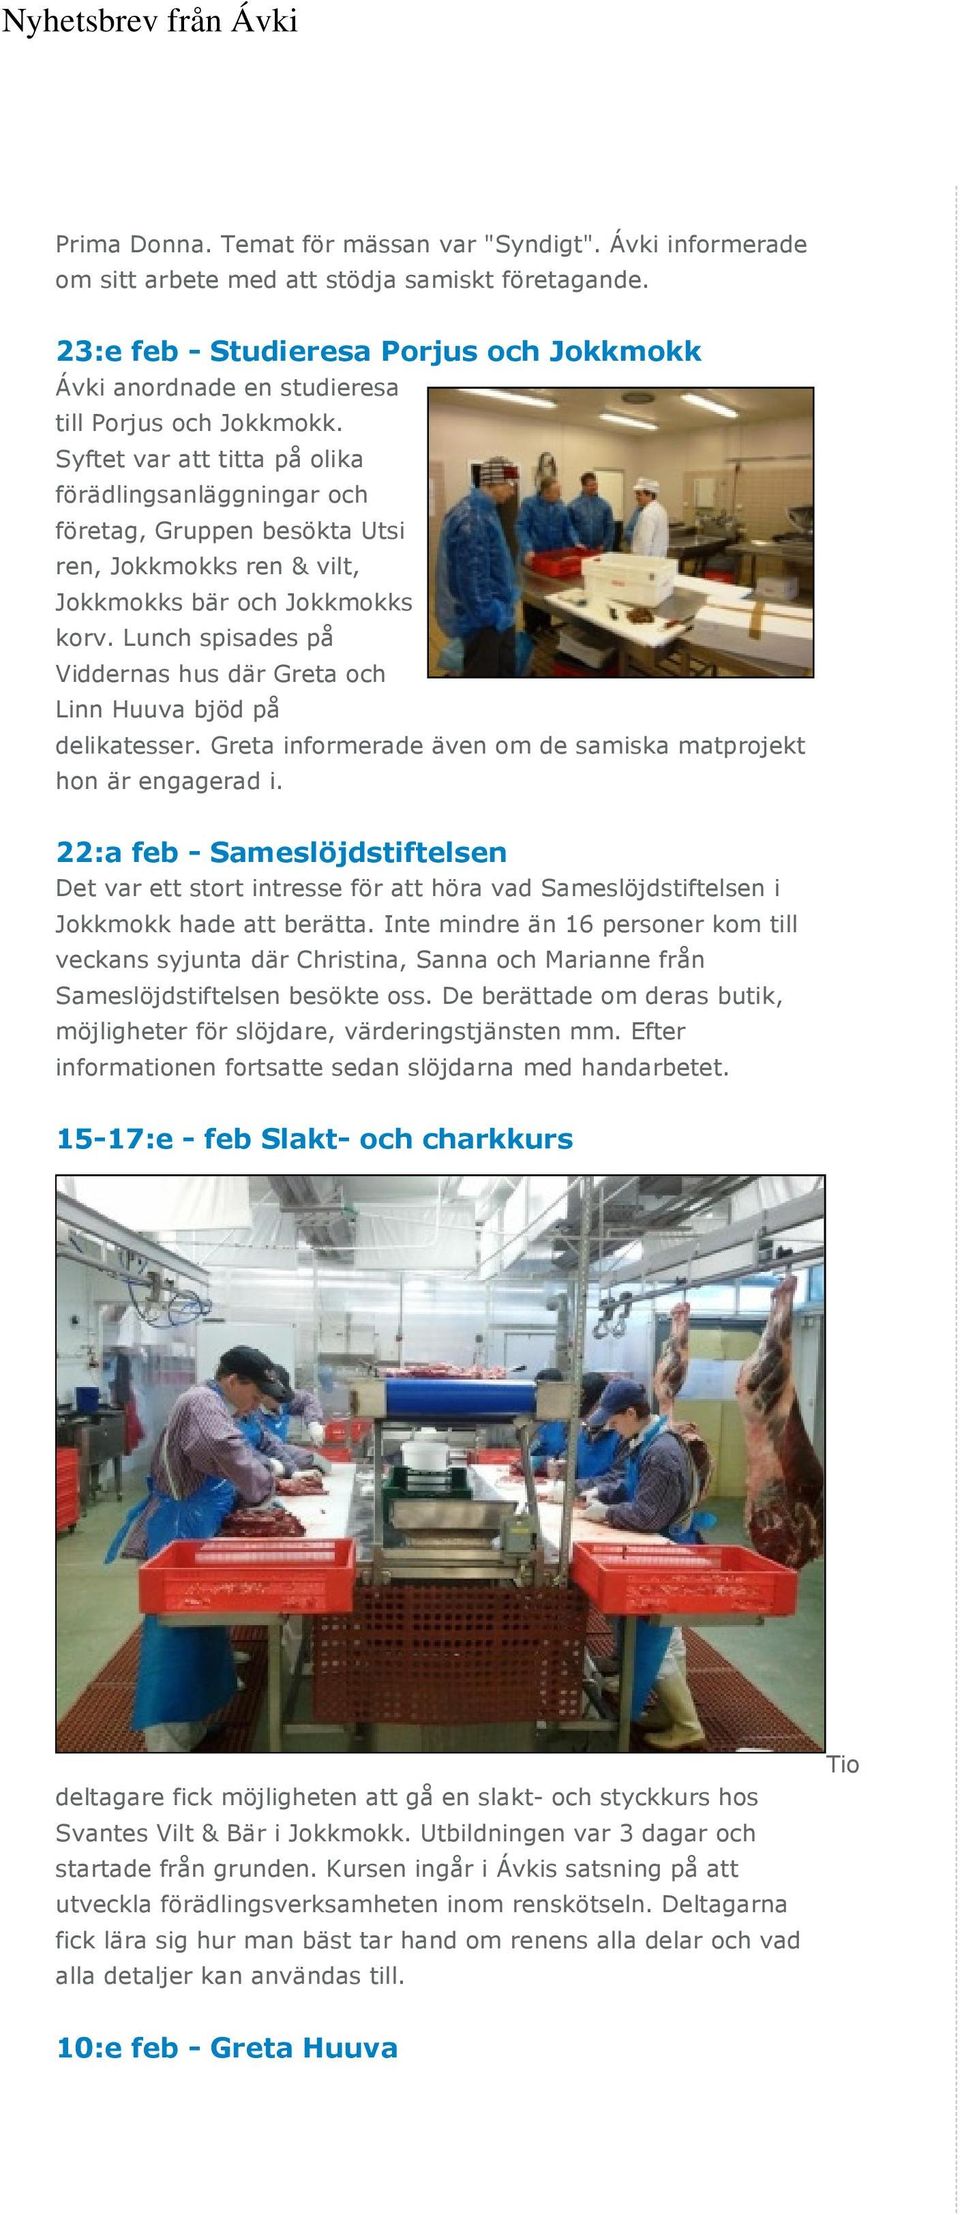 Syftet var att titta på olika förädlingsanläggningar och företag, Gruppen besökta Utsi ren, Jokkmokks ren & vilt, Jokkmokks bär och Jokkmokks korv.